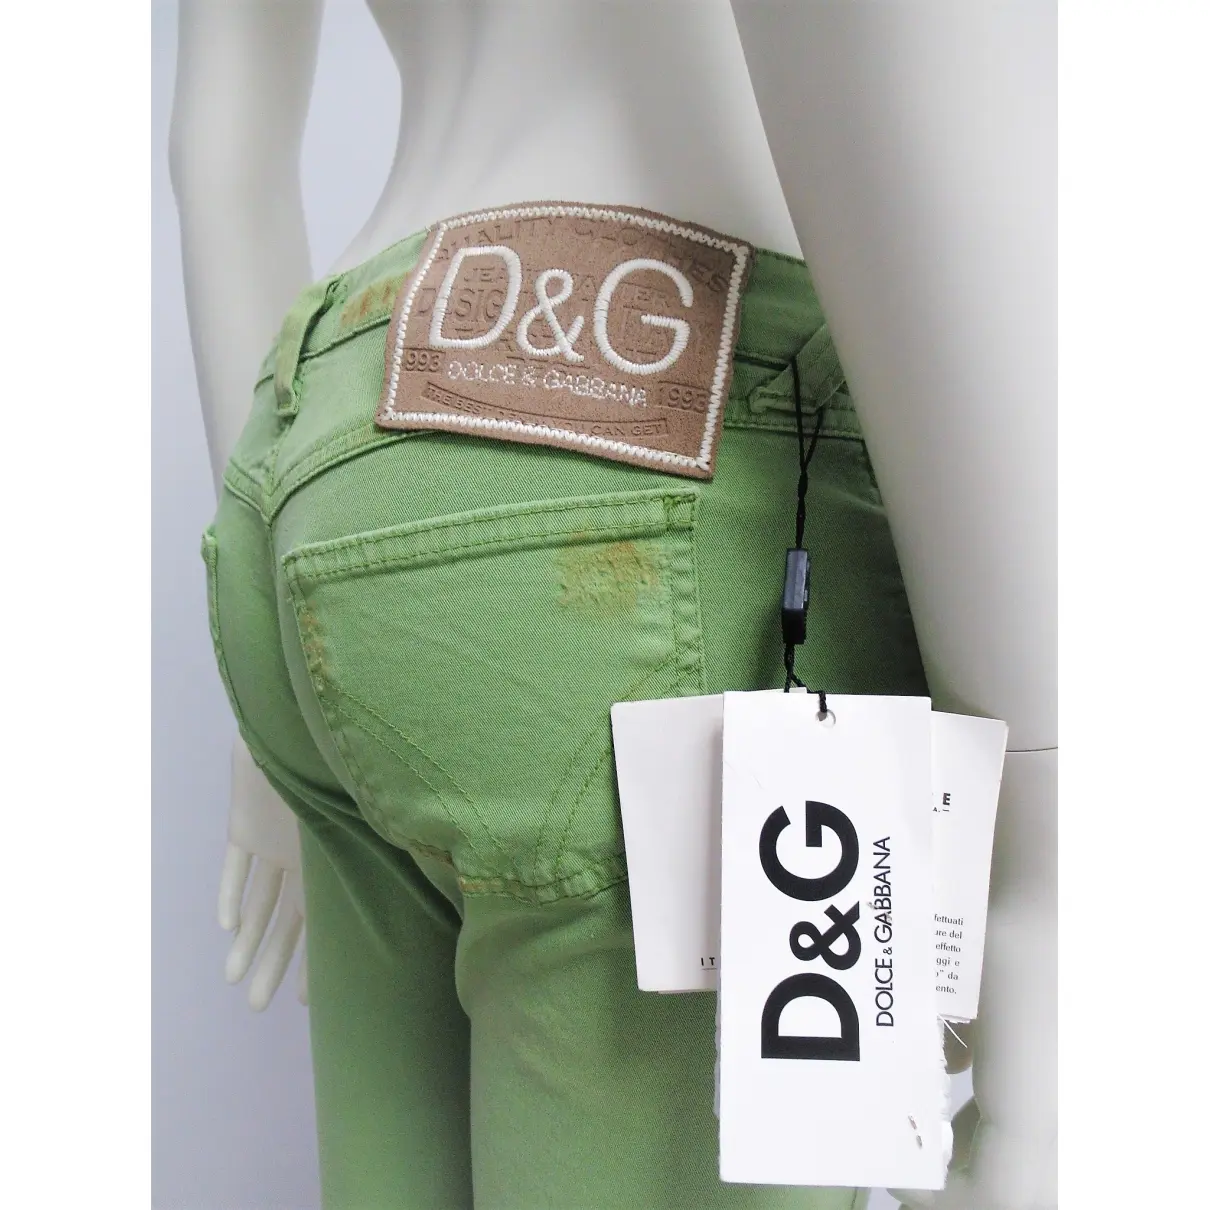 Buy D&G Slim pants online